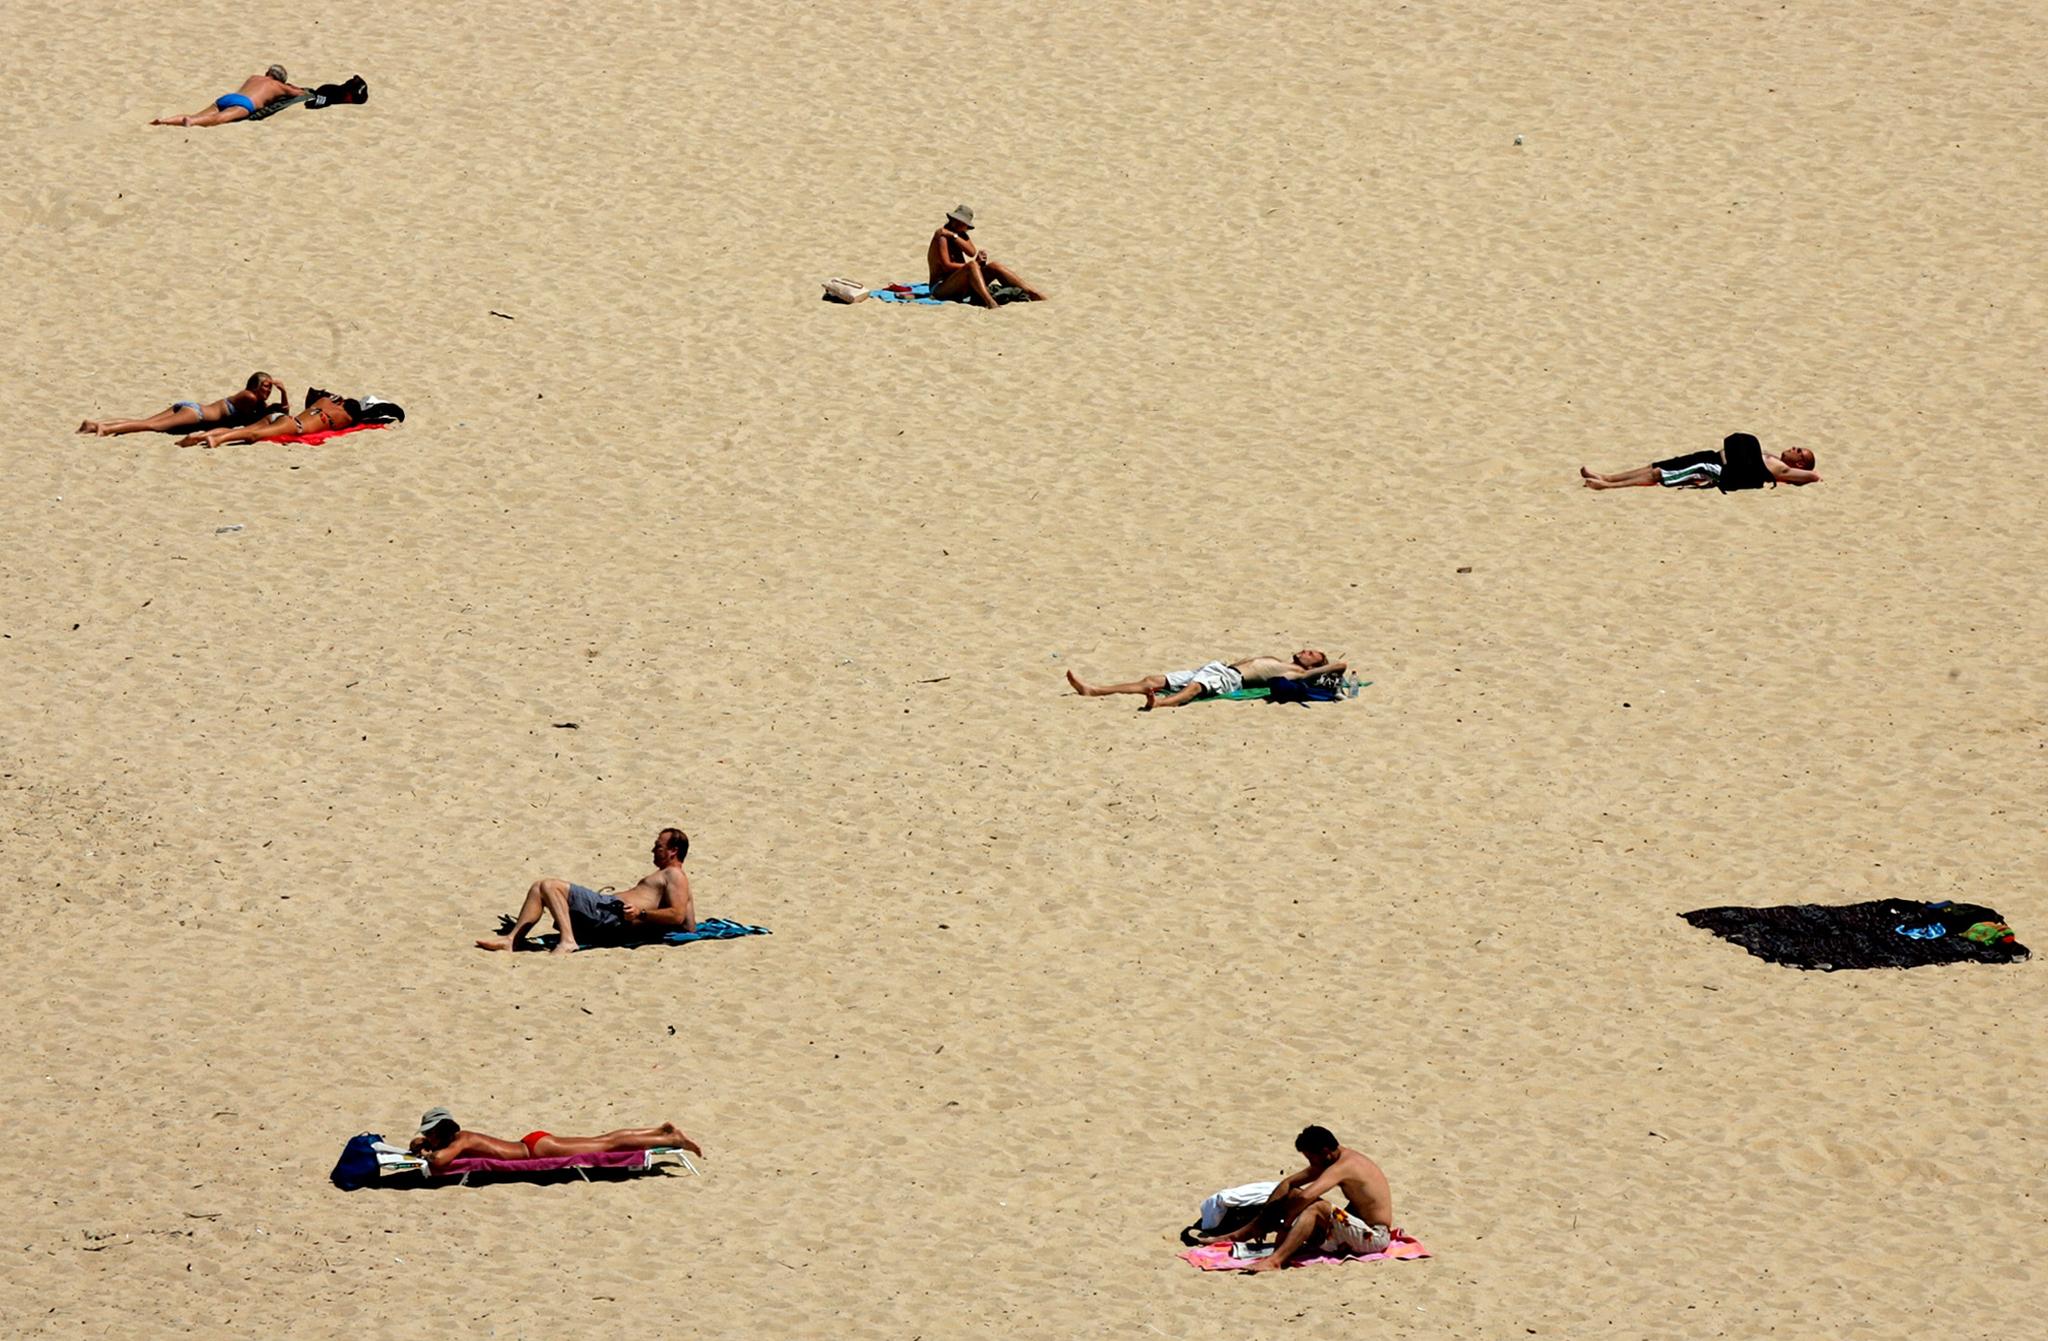 Å ligge på stranden er nettopp det mange nordmenn lengter etter å gjøre i ferien, skriver innleggsforfatterne. Bildet er fra Sydney, Australia.